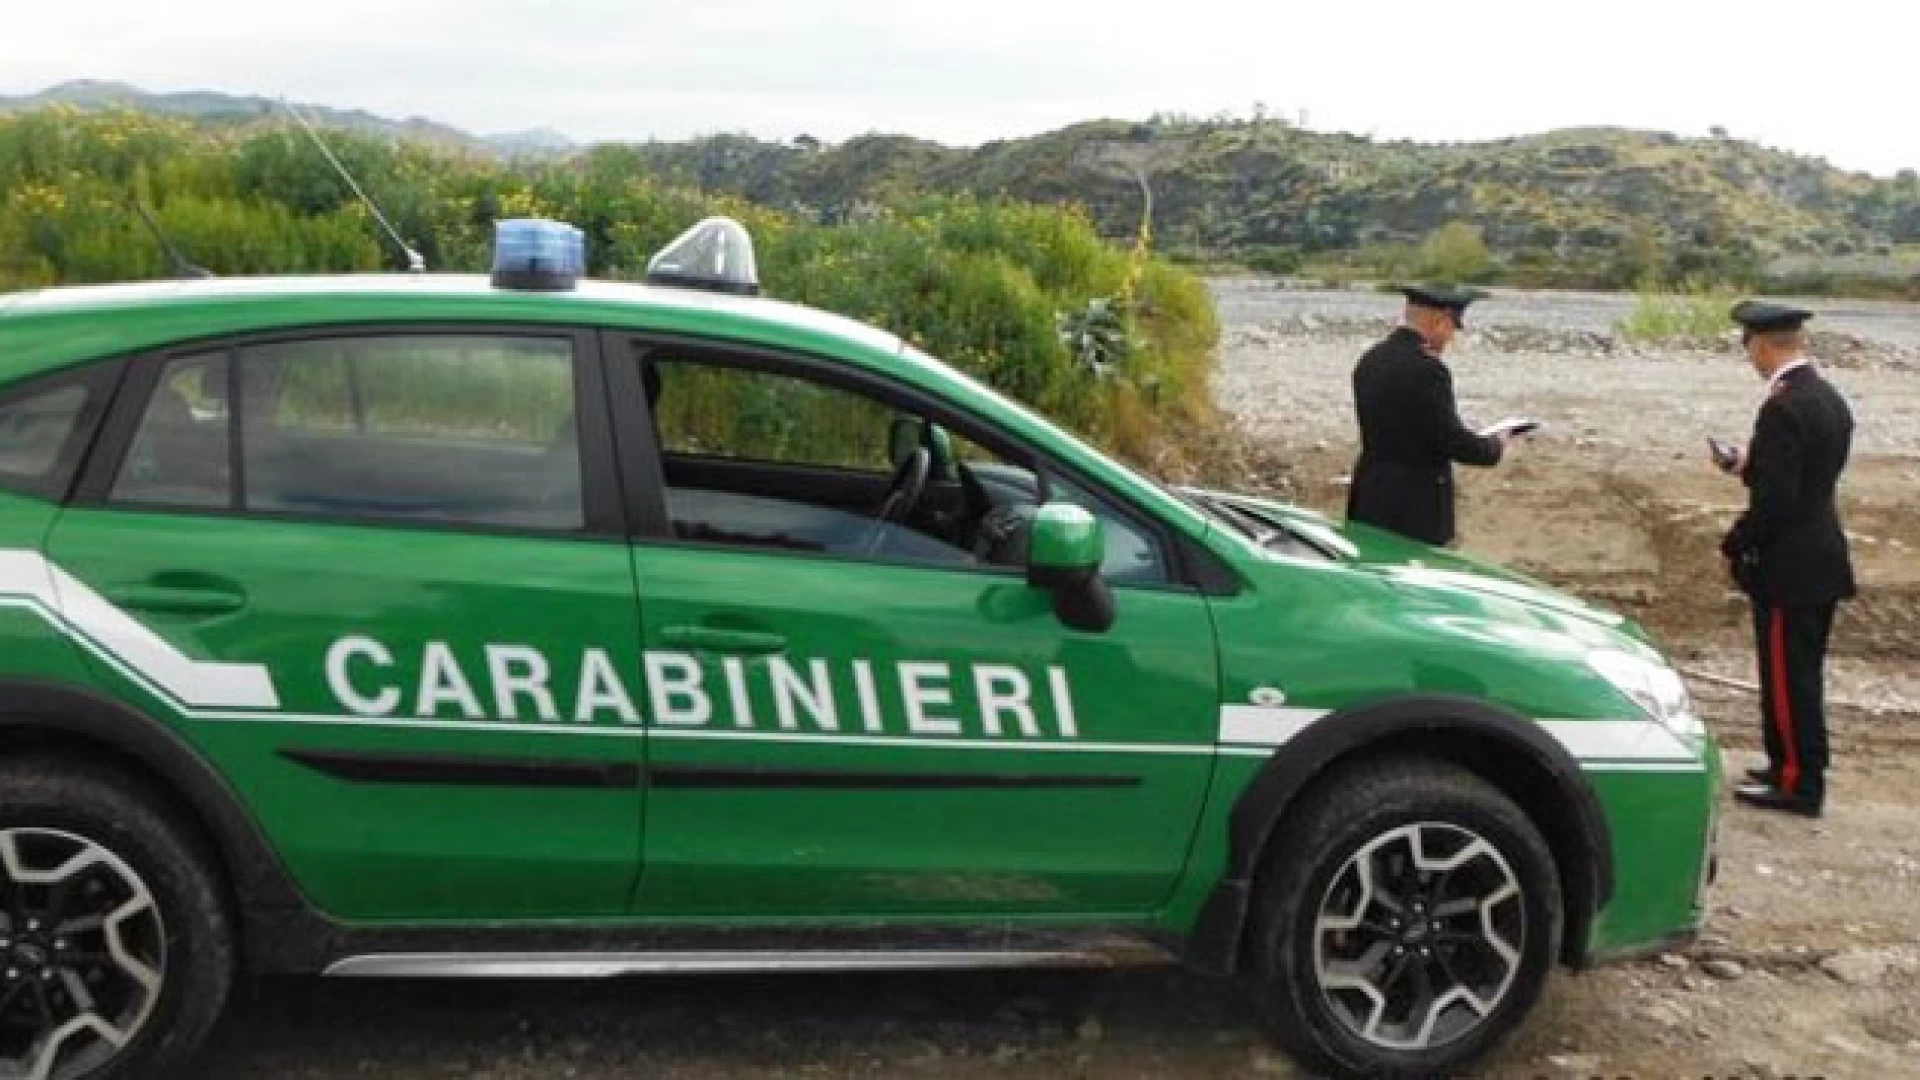 Carabinieri forestali: maxi sanzione a un cercatore di tartufo a “Rio Verde” sul territorio di Pescopennataro. Inflitta multa di 5mila euro.